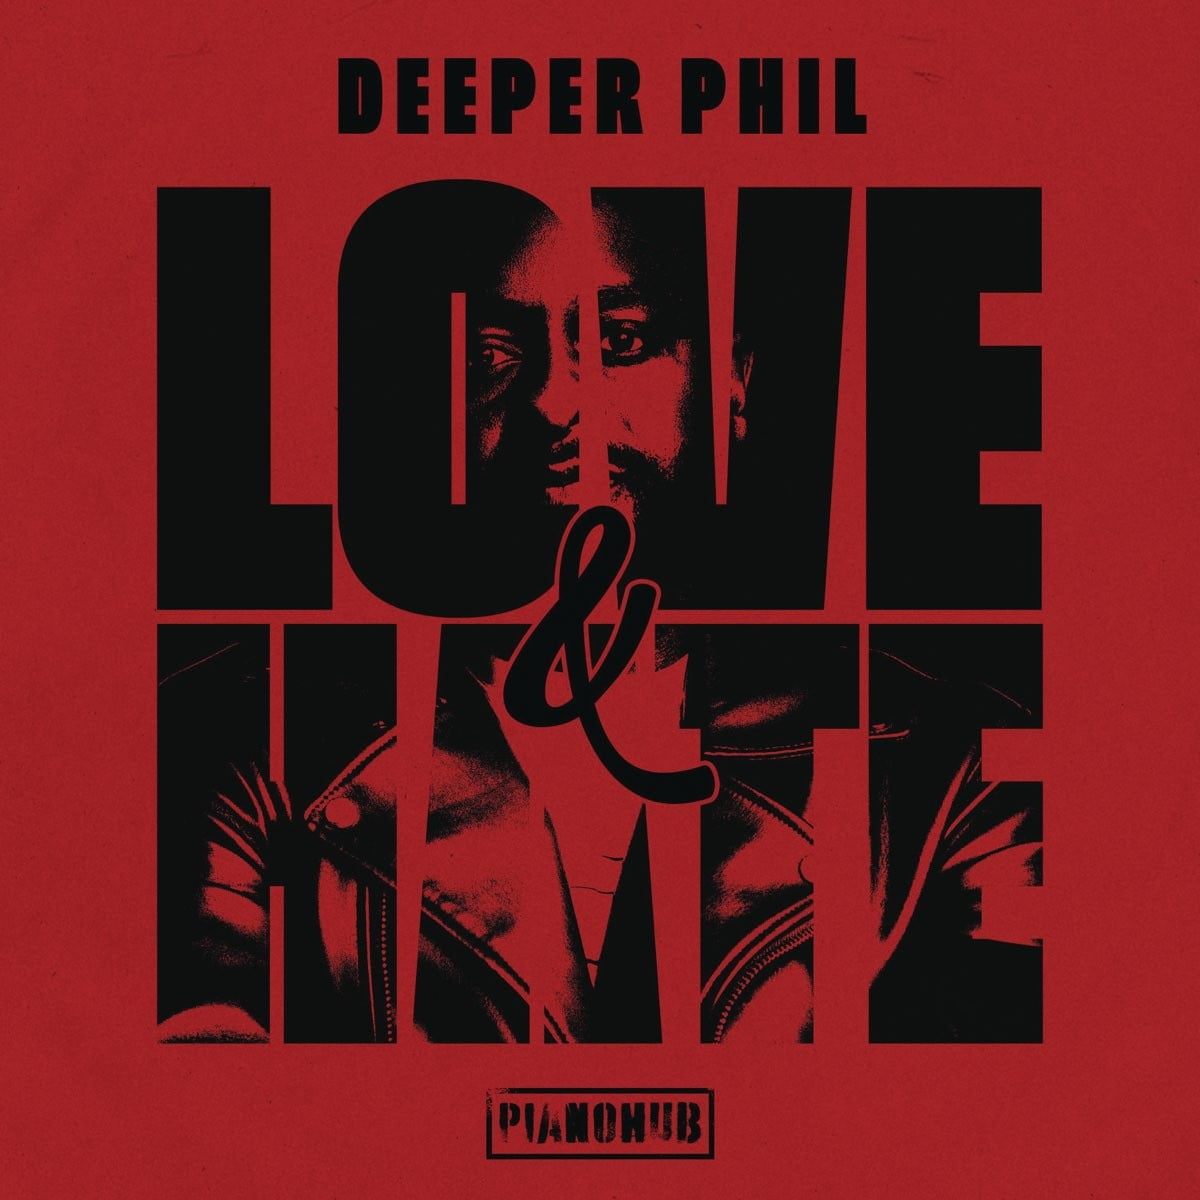 Deeper Phil – Asisalali ft. MaWhoo & Shino Kikai mp3 download free lyrics